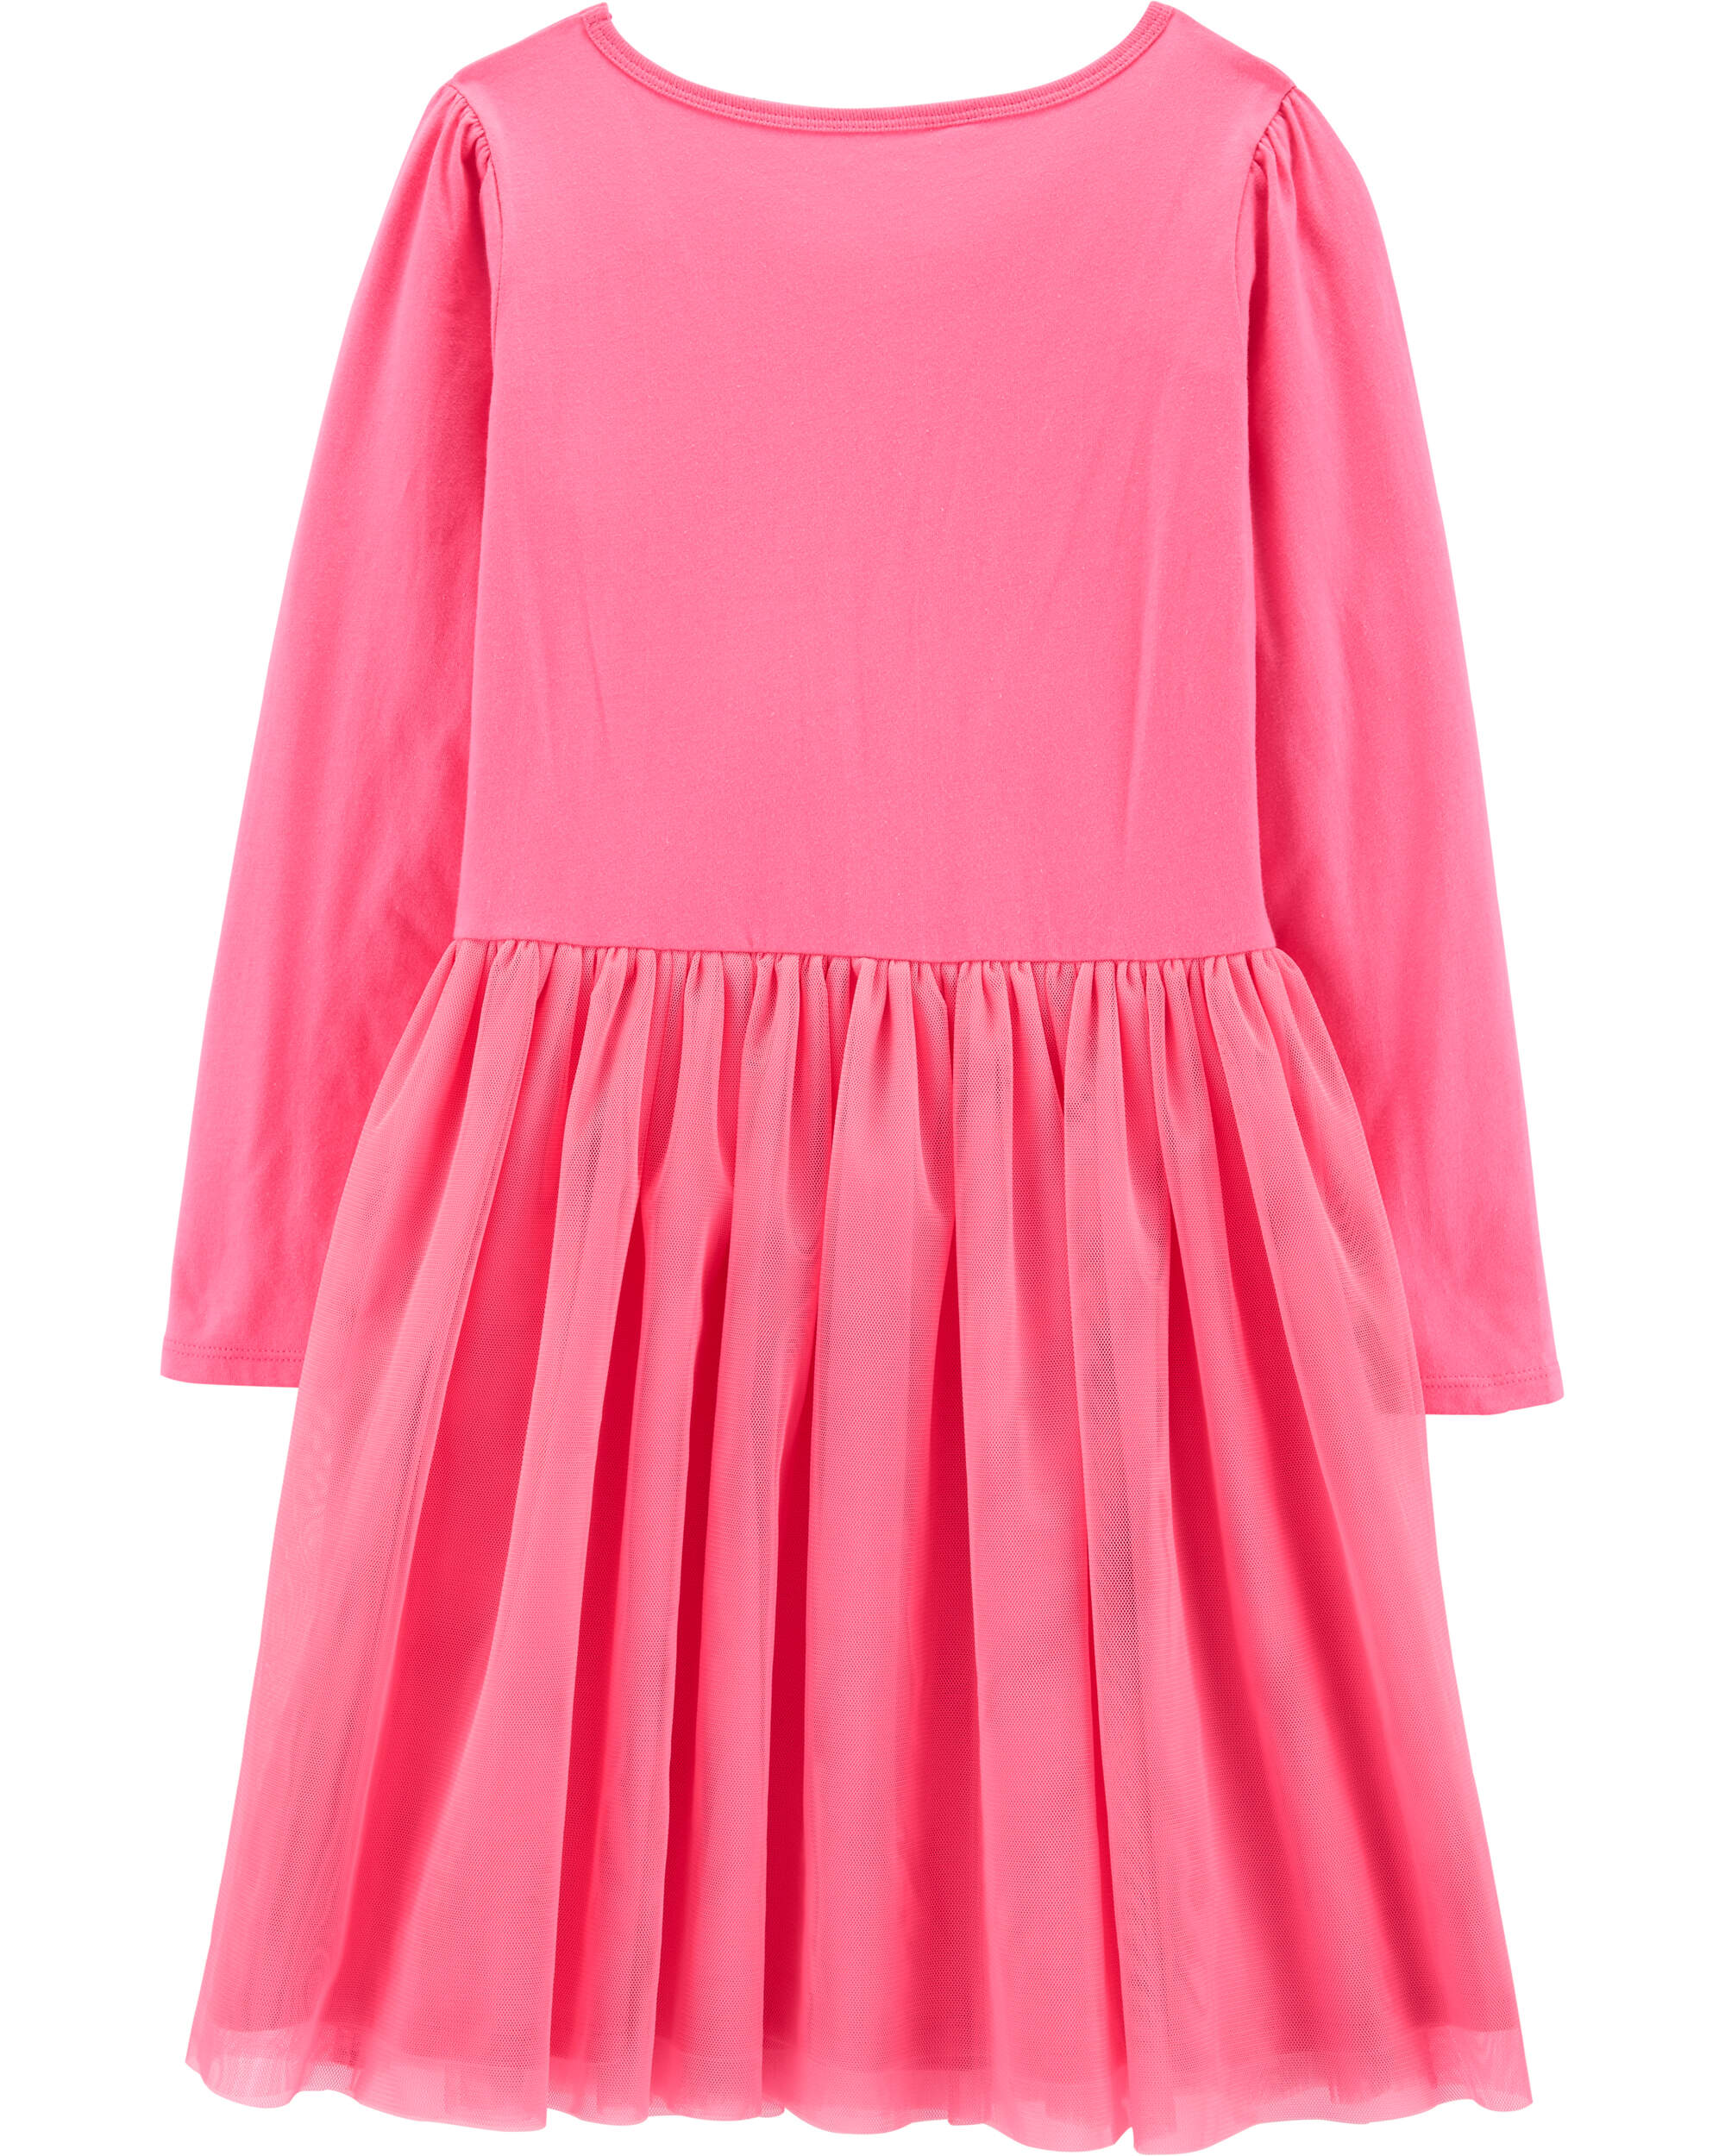 Pink Tutu Jersey Dress | carters.com